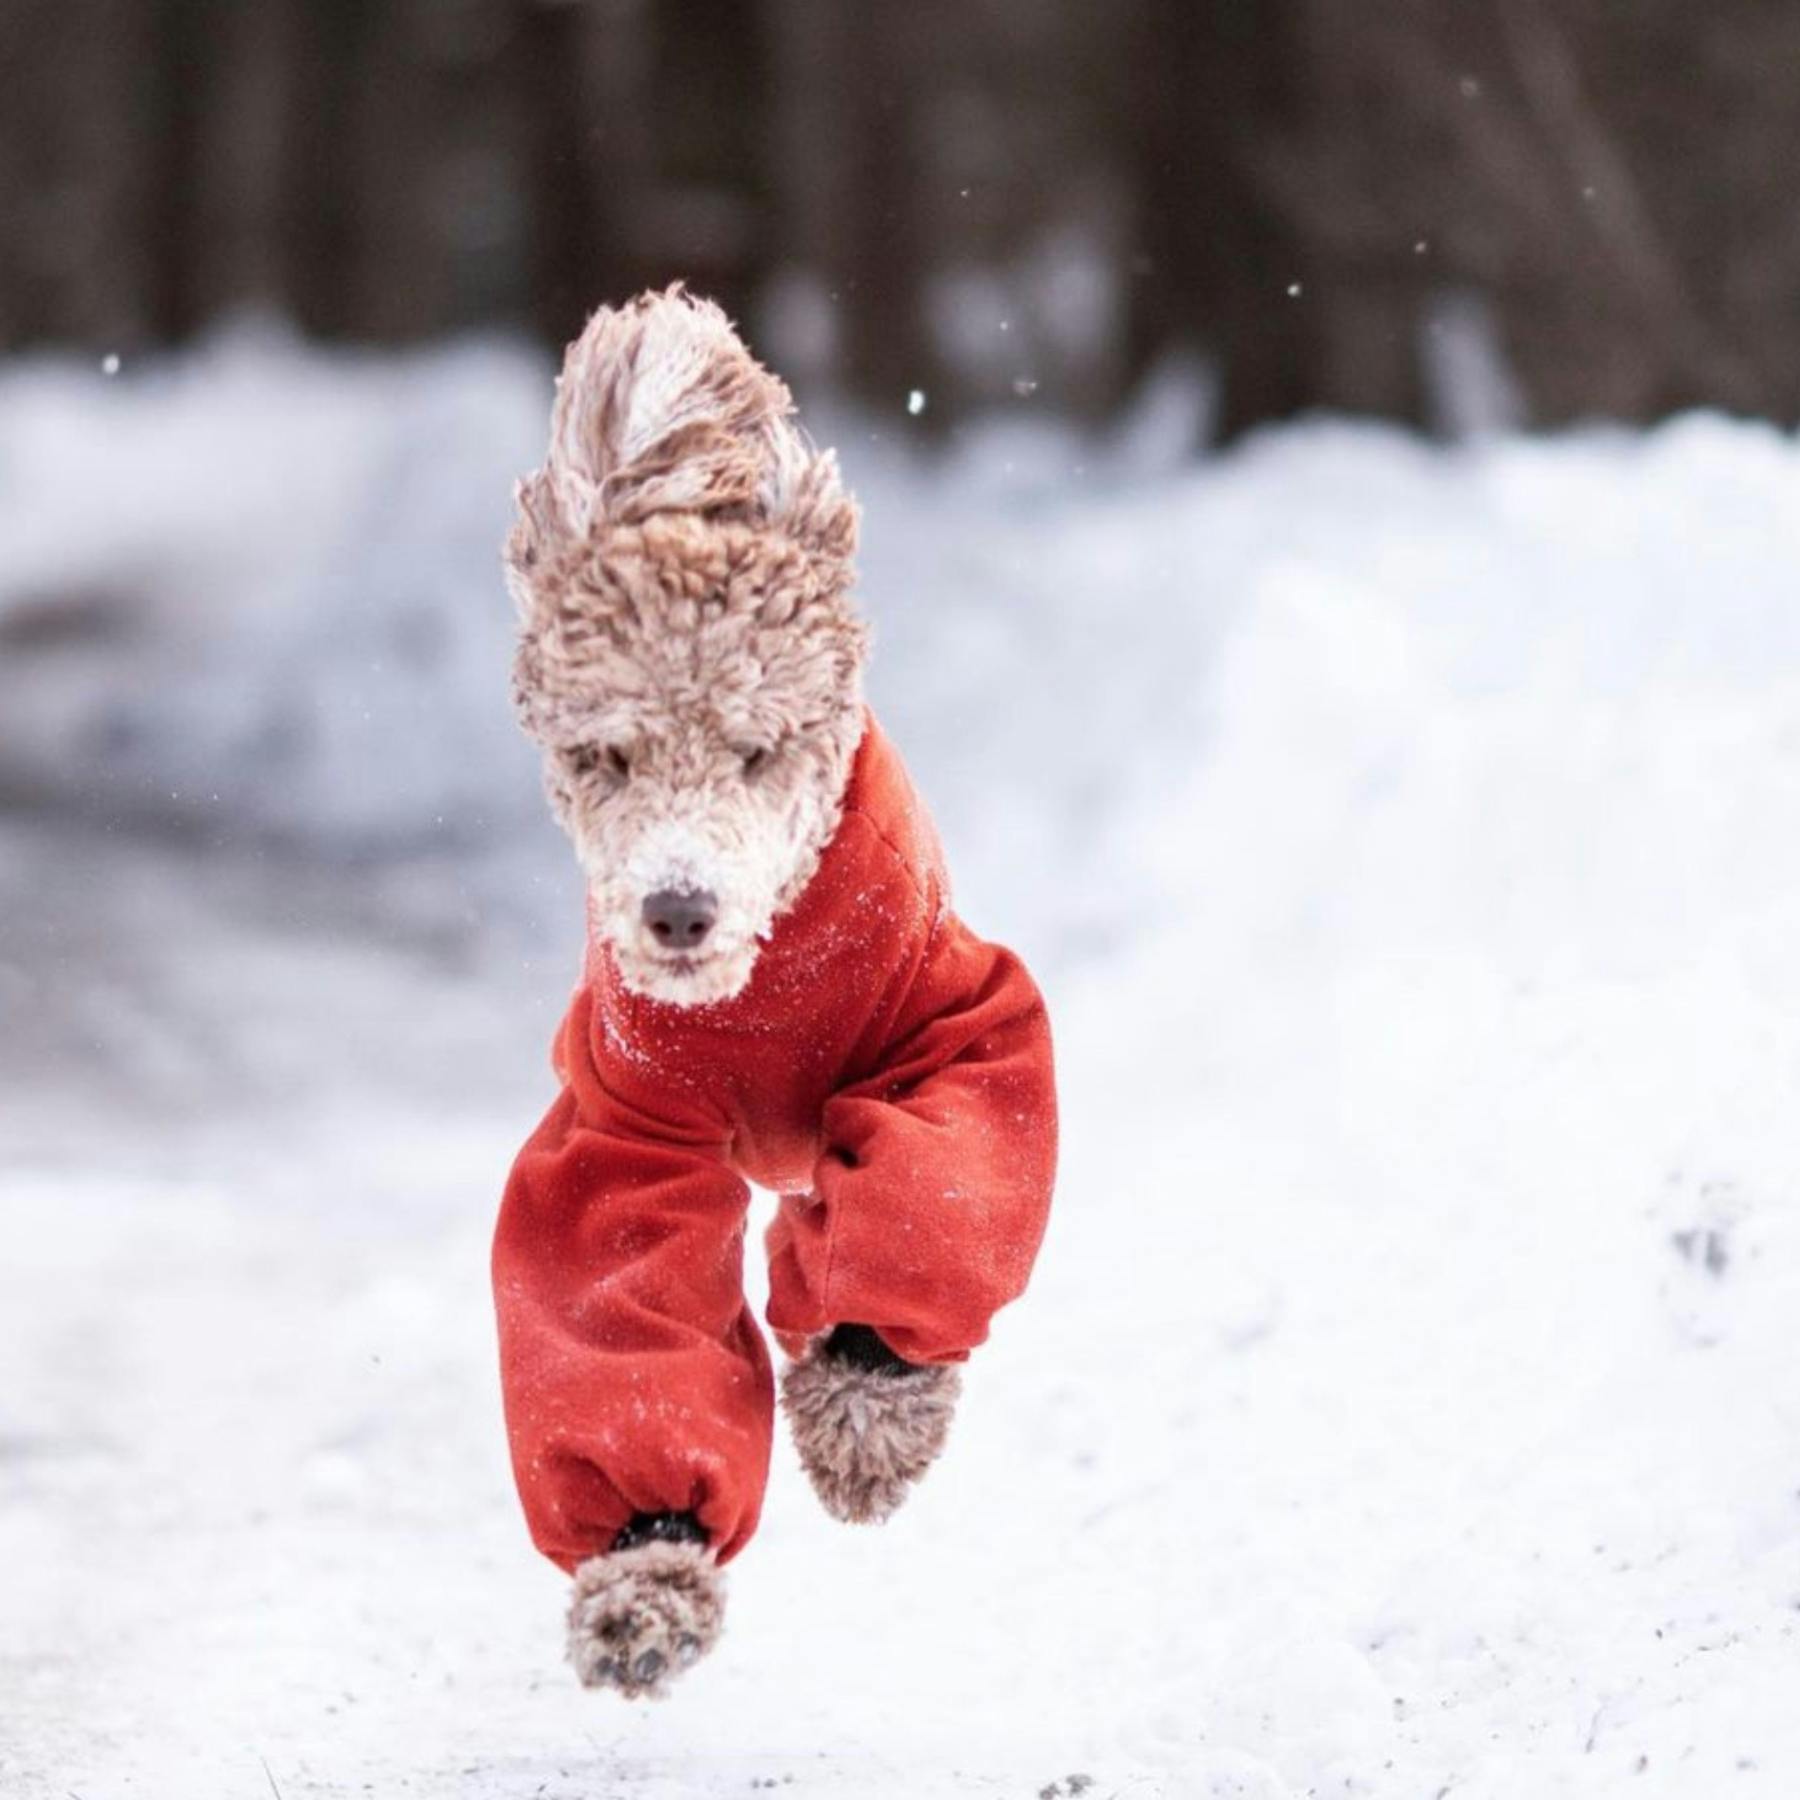 Braucht dein Hund einen Wintermantel? Mach den Test!